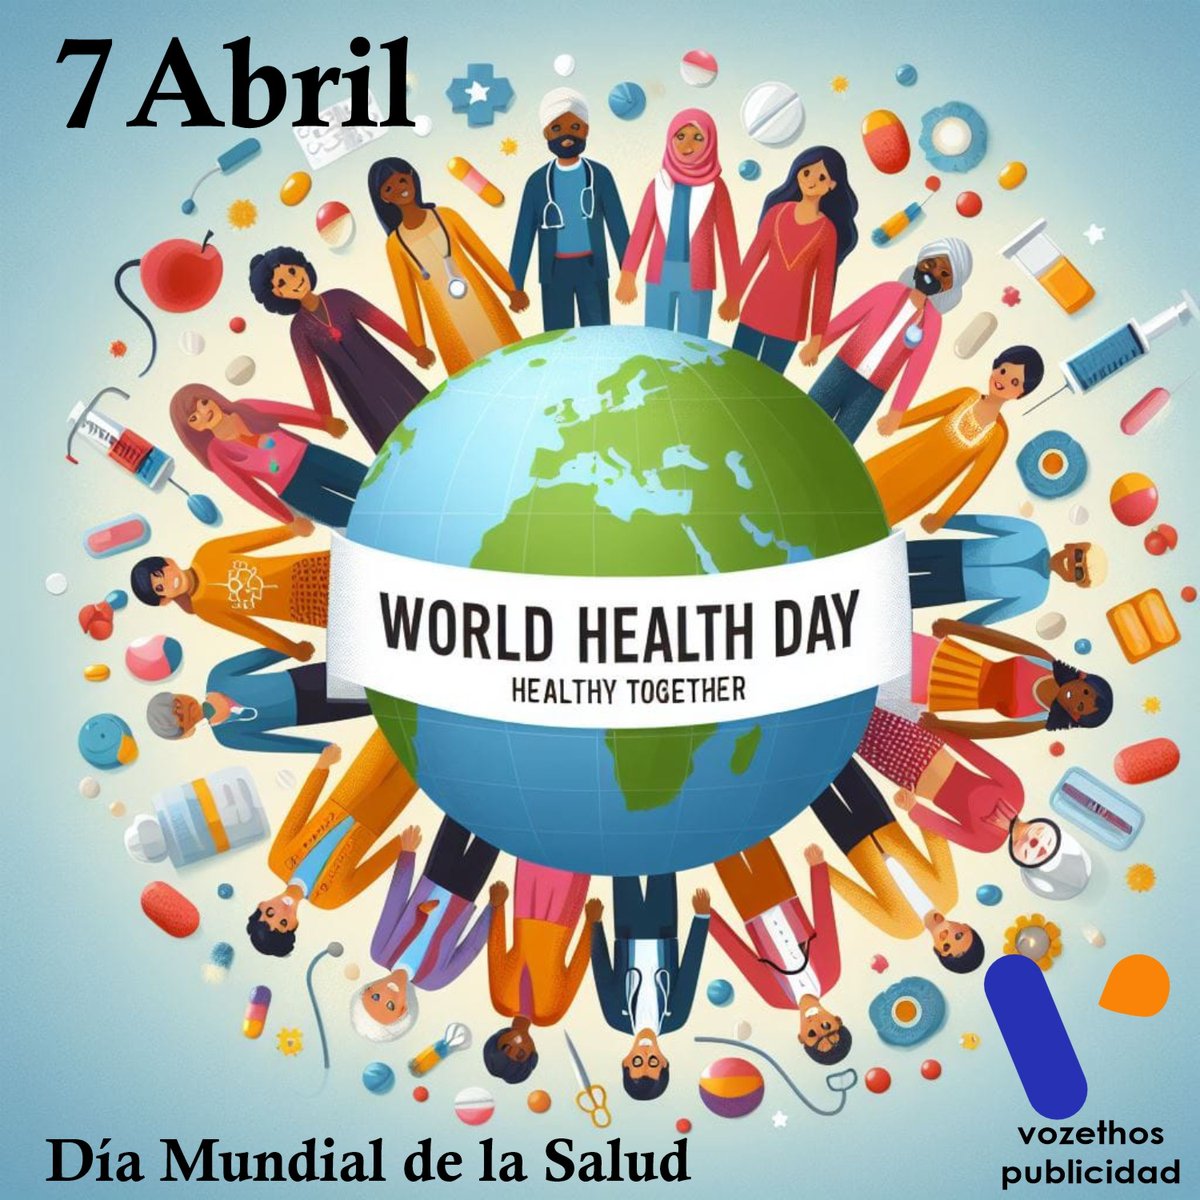 7 de abril es el día mundial de la salud #worldheartday #diamundialdelasalud #salud #healthy @vozethos